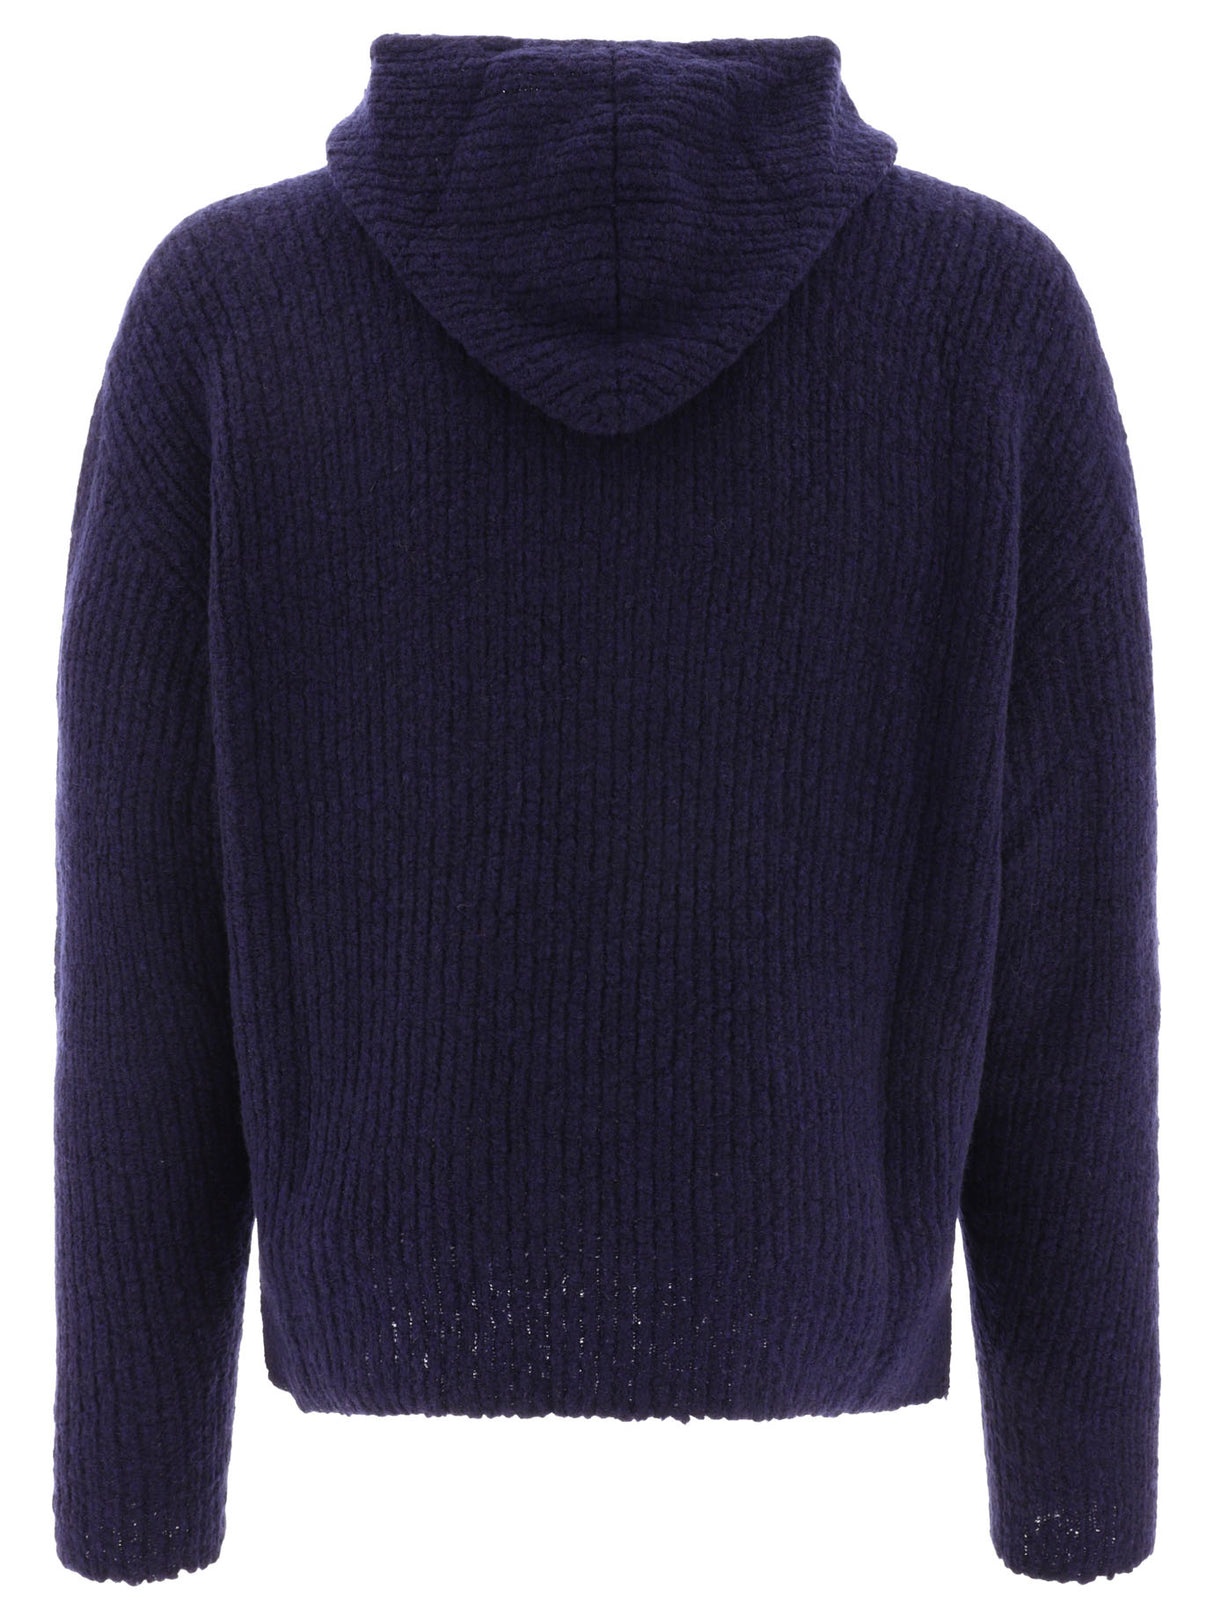 LARDINI Blue Wool-Blend Hooded Sweater for Men